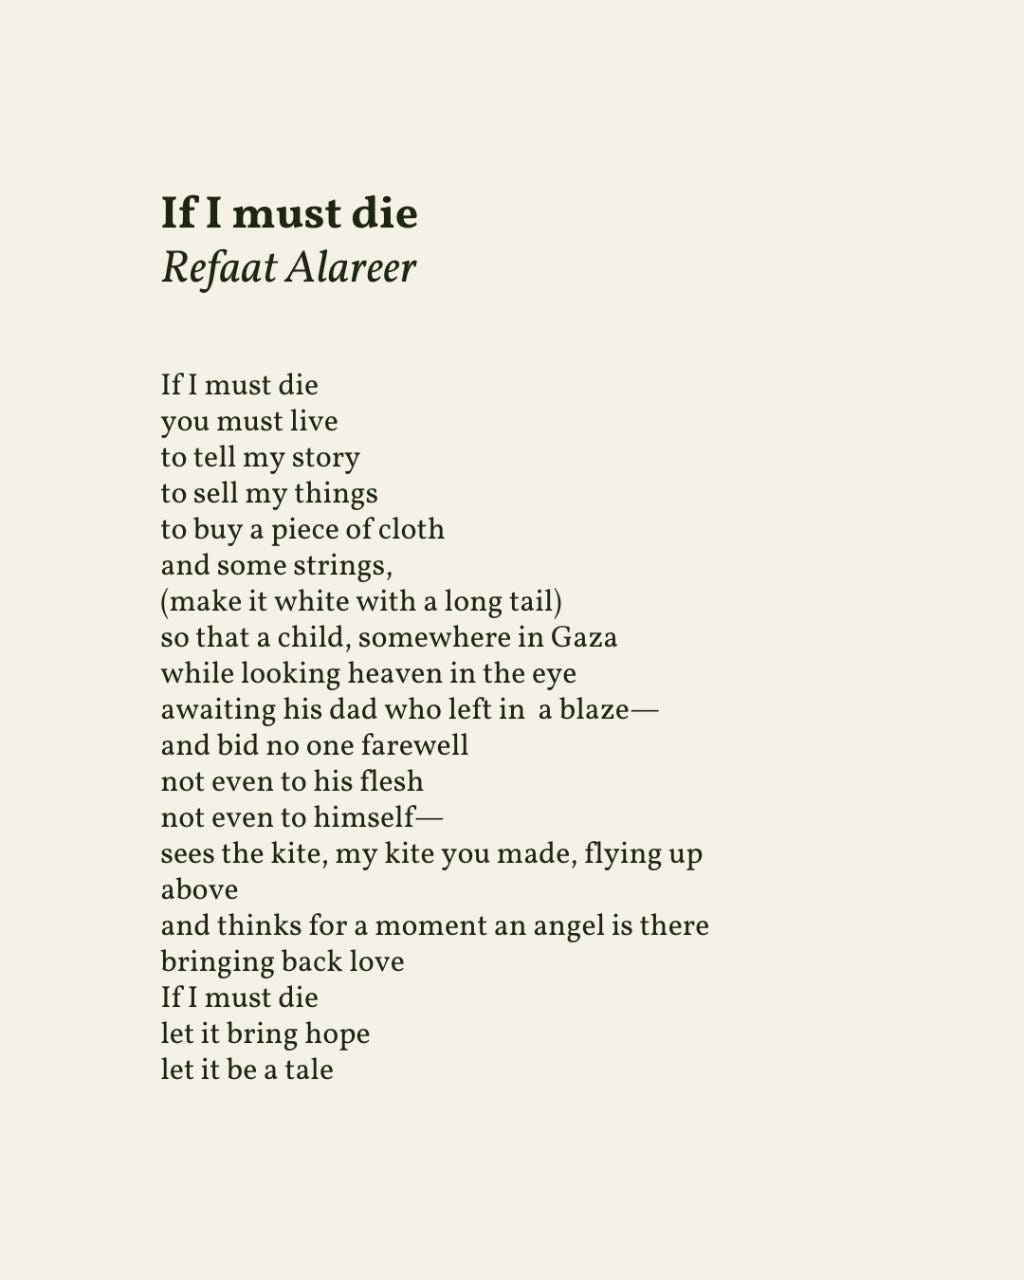 Read A Little Poetry on X: "“If I must die / let it bring hope / let it be  a tale” — Refaat Alareer Palestinian poet Refaat Alareer was killed  alongside several